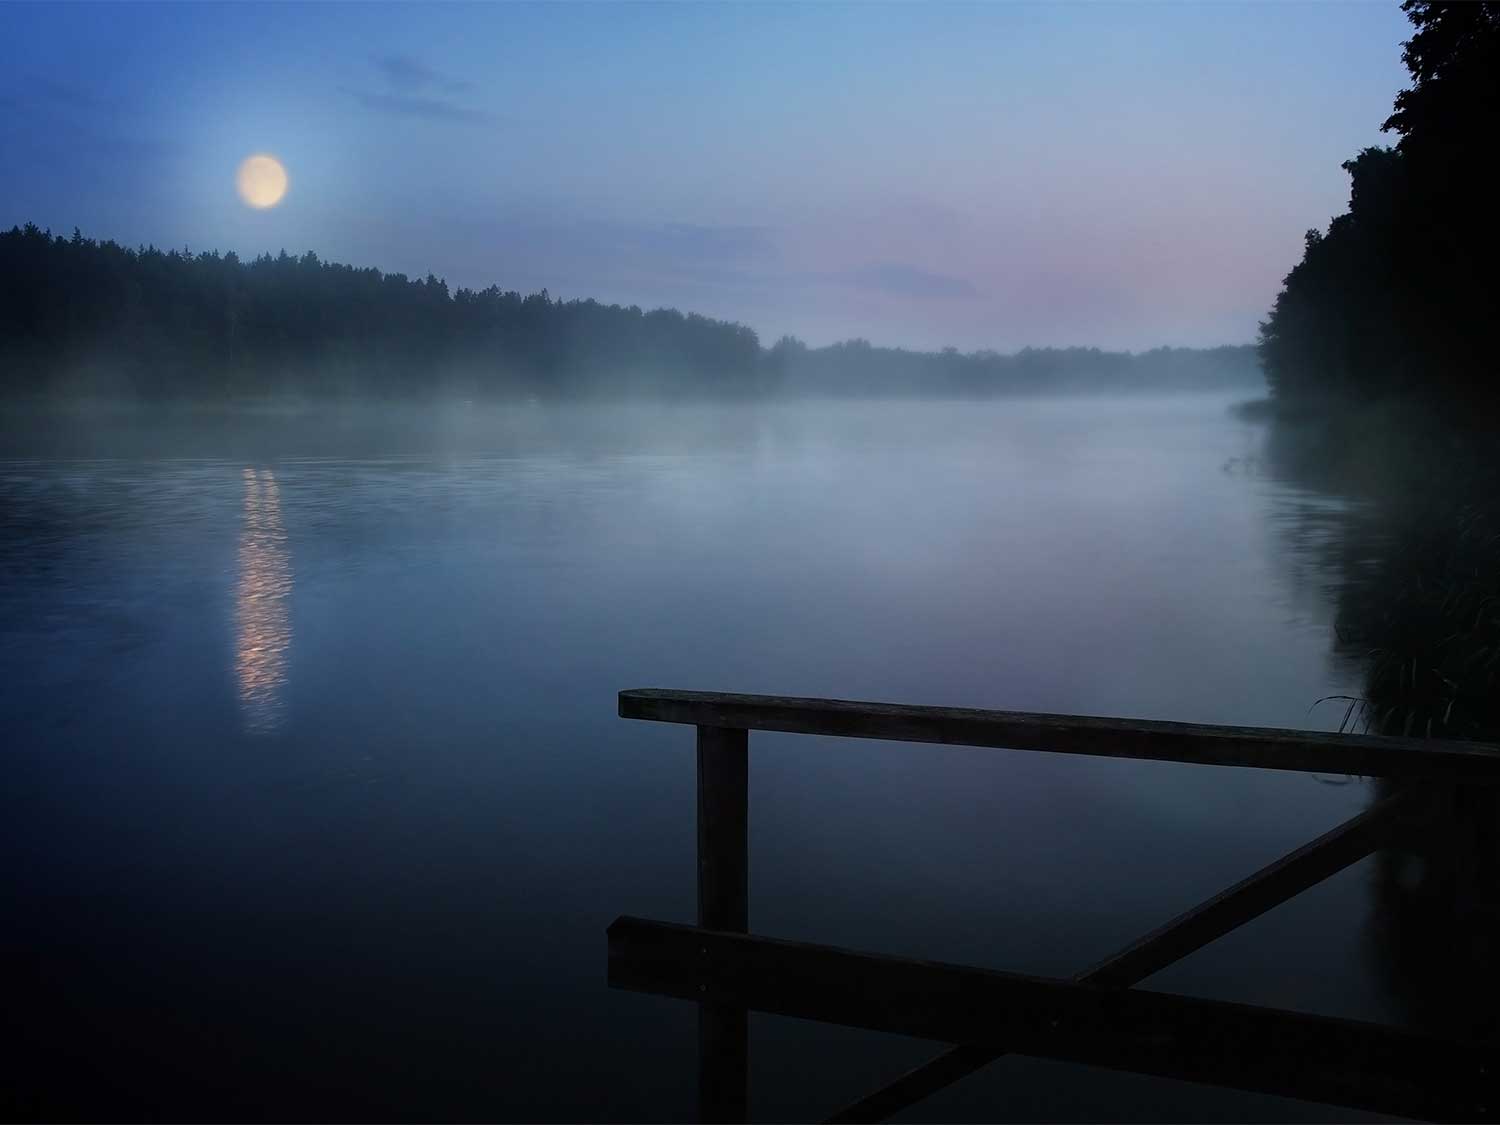 moon reflecting against a lake at night